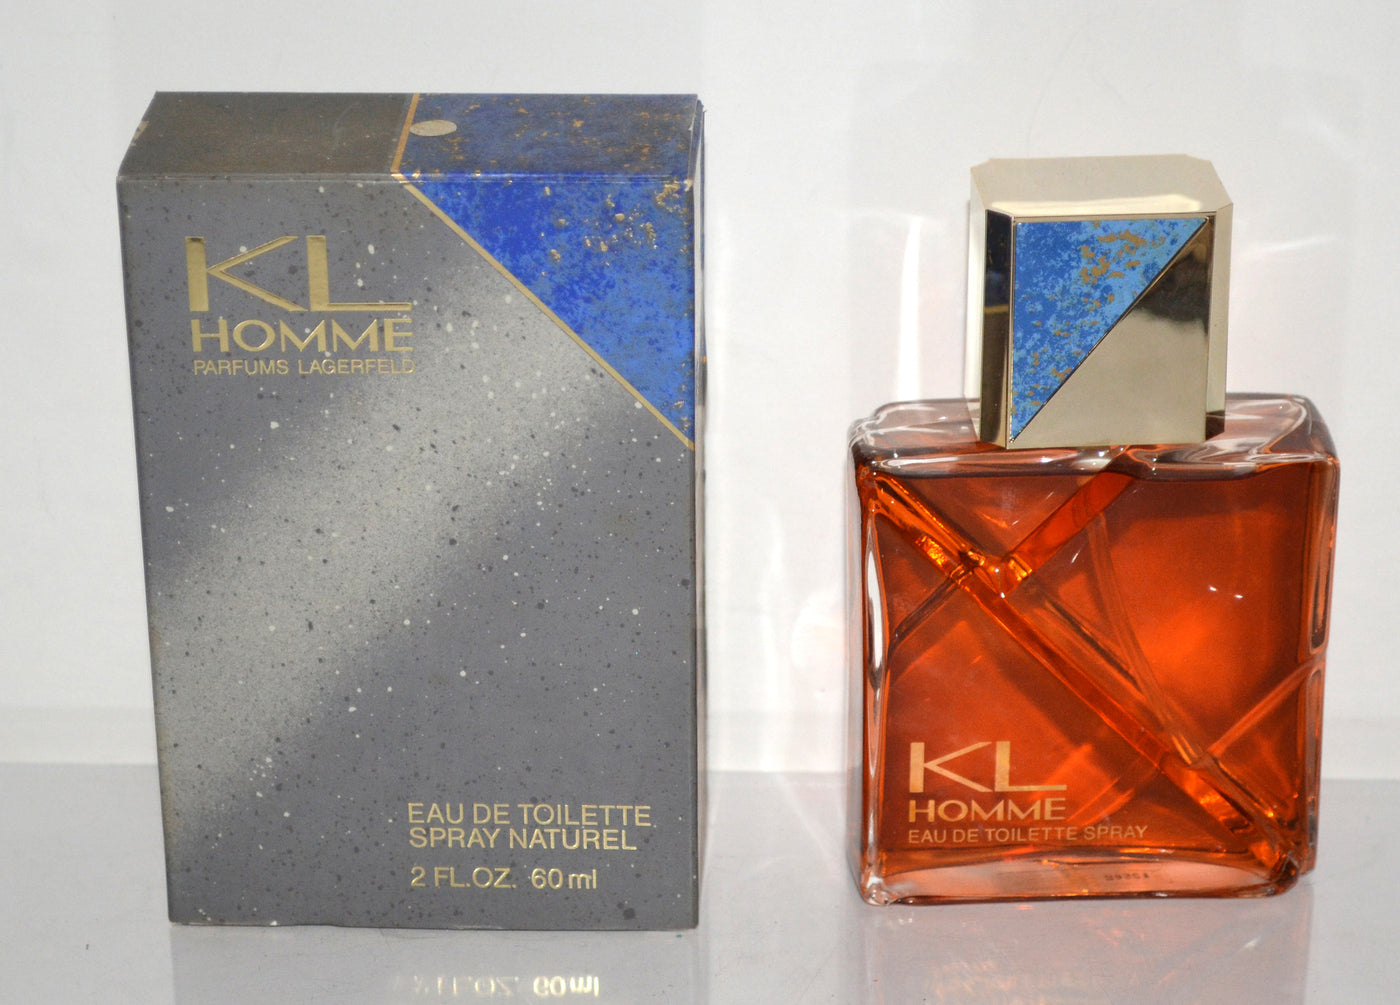 Parfums Lagerfeld KL Homme Eau De Toilette Naturel Spray